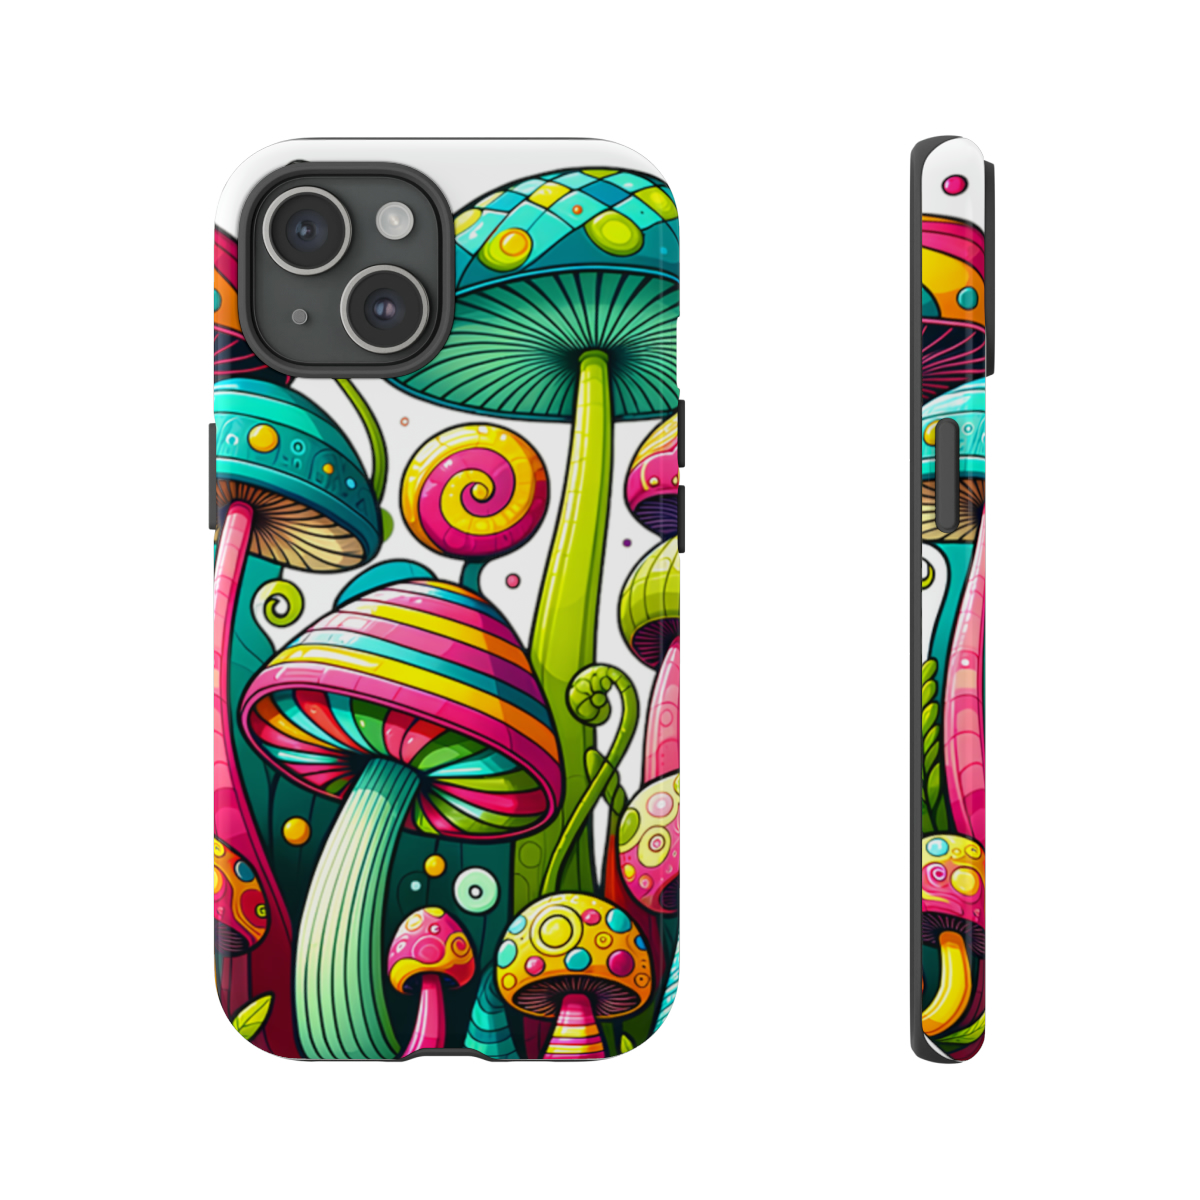 "Mushroom" Cover Case Designs